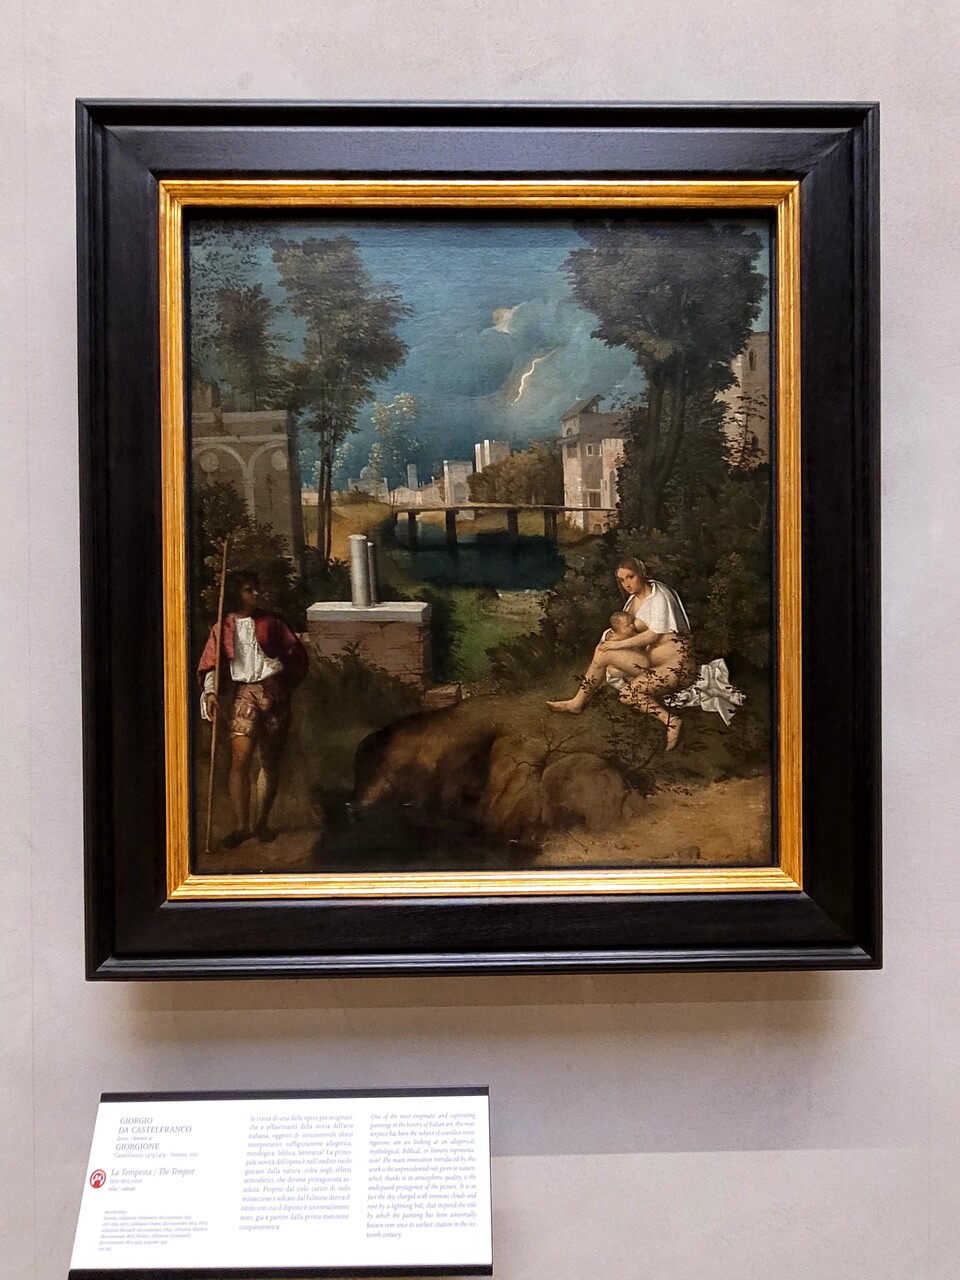 베네치아 아카데미아 미술관에 있는 조르조네의폭풍우,1508년의 작품으로 최초의 풍경화라고할수있다